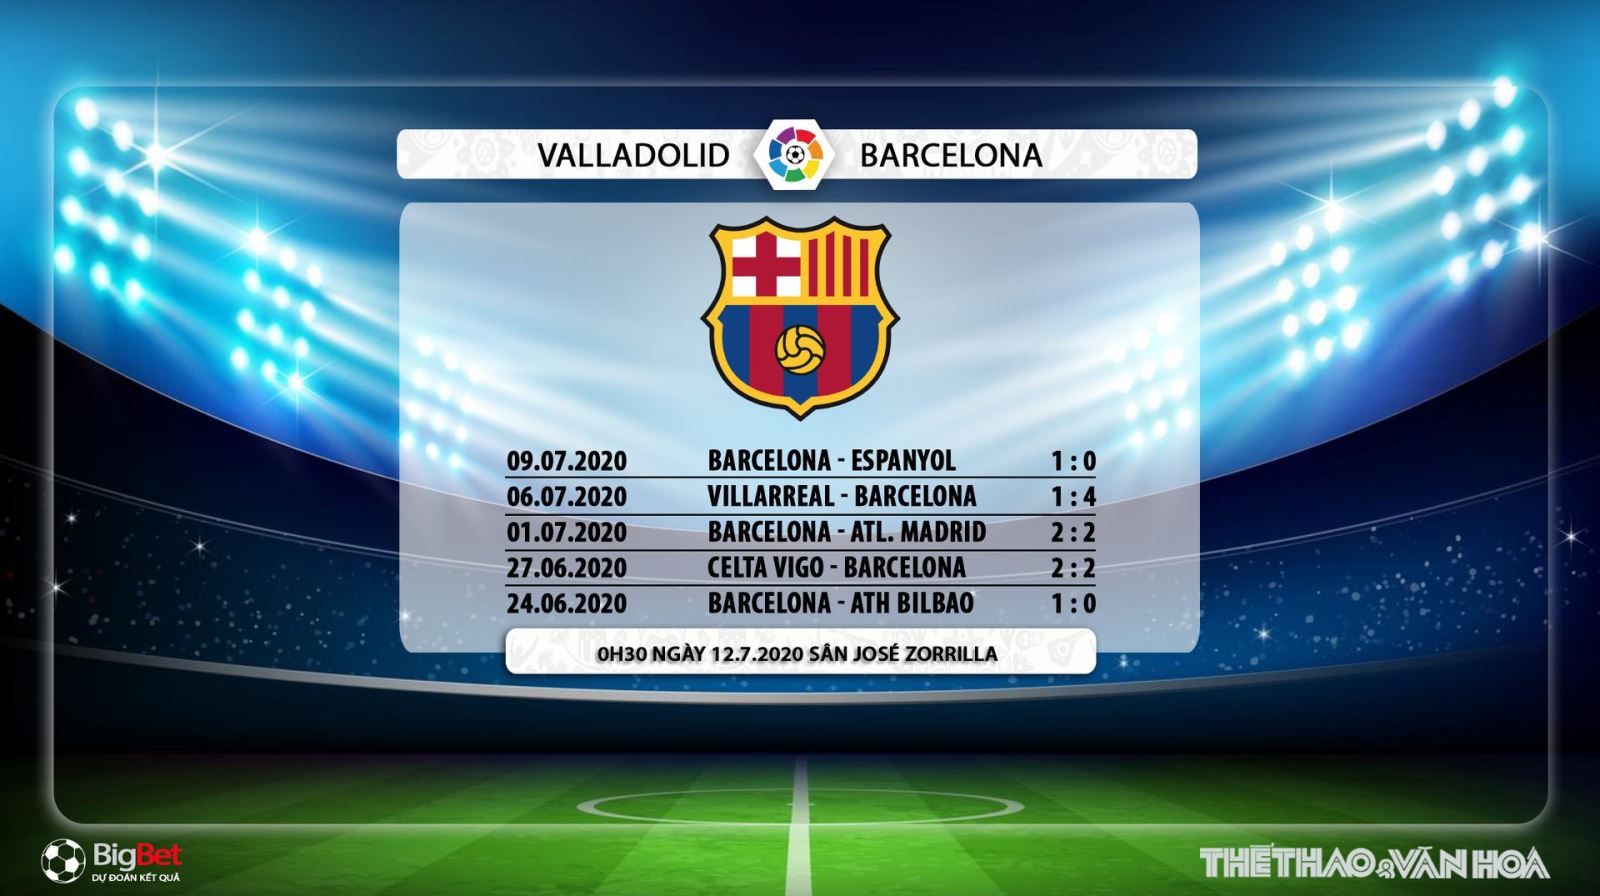 Valladolid vs Barcelona, Barca, Barcelona, trực tiếp bóng đá, bóng đá, trực tiếp Valladolid vs Barcelona, nhận định bóng đá, nhận định, kèo bóng đá